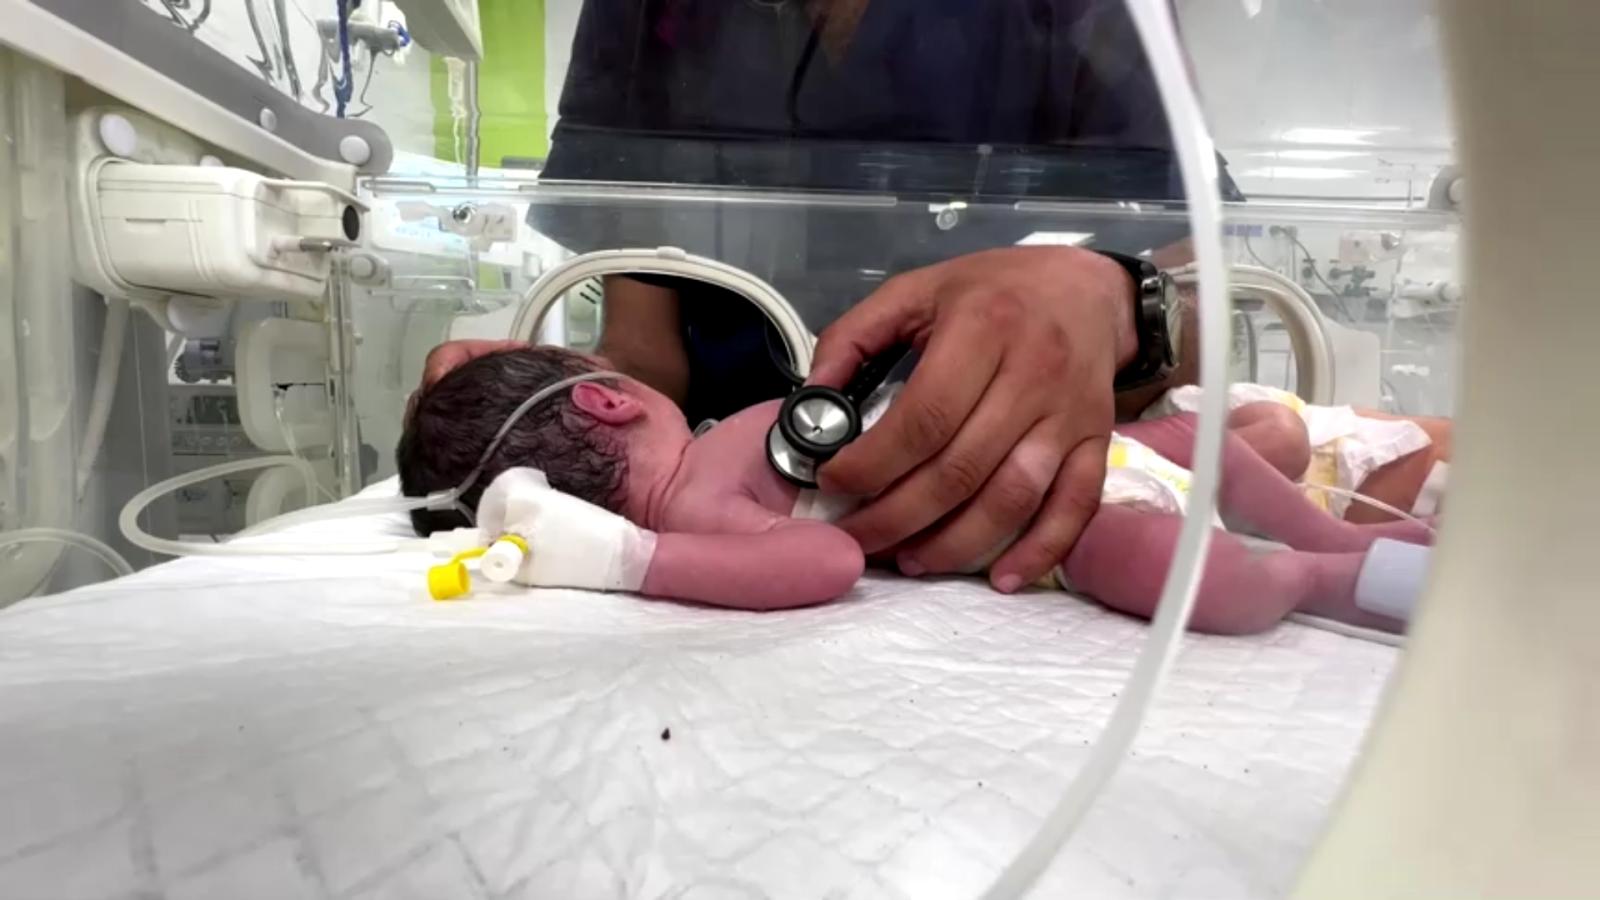 ทีมแพทย์ในฉนวนกาซาทำคลอดทารกจากร่างแม่ที่เสียชีวิตแล้ว